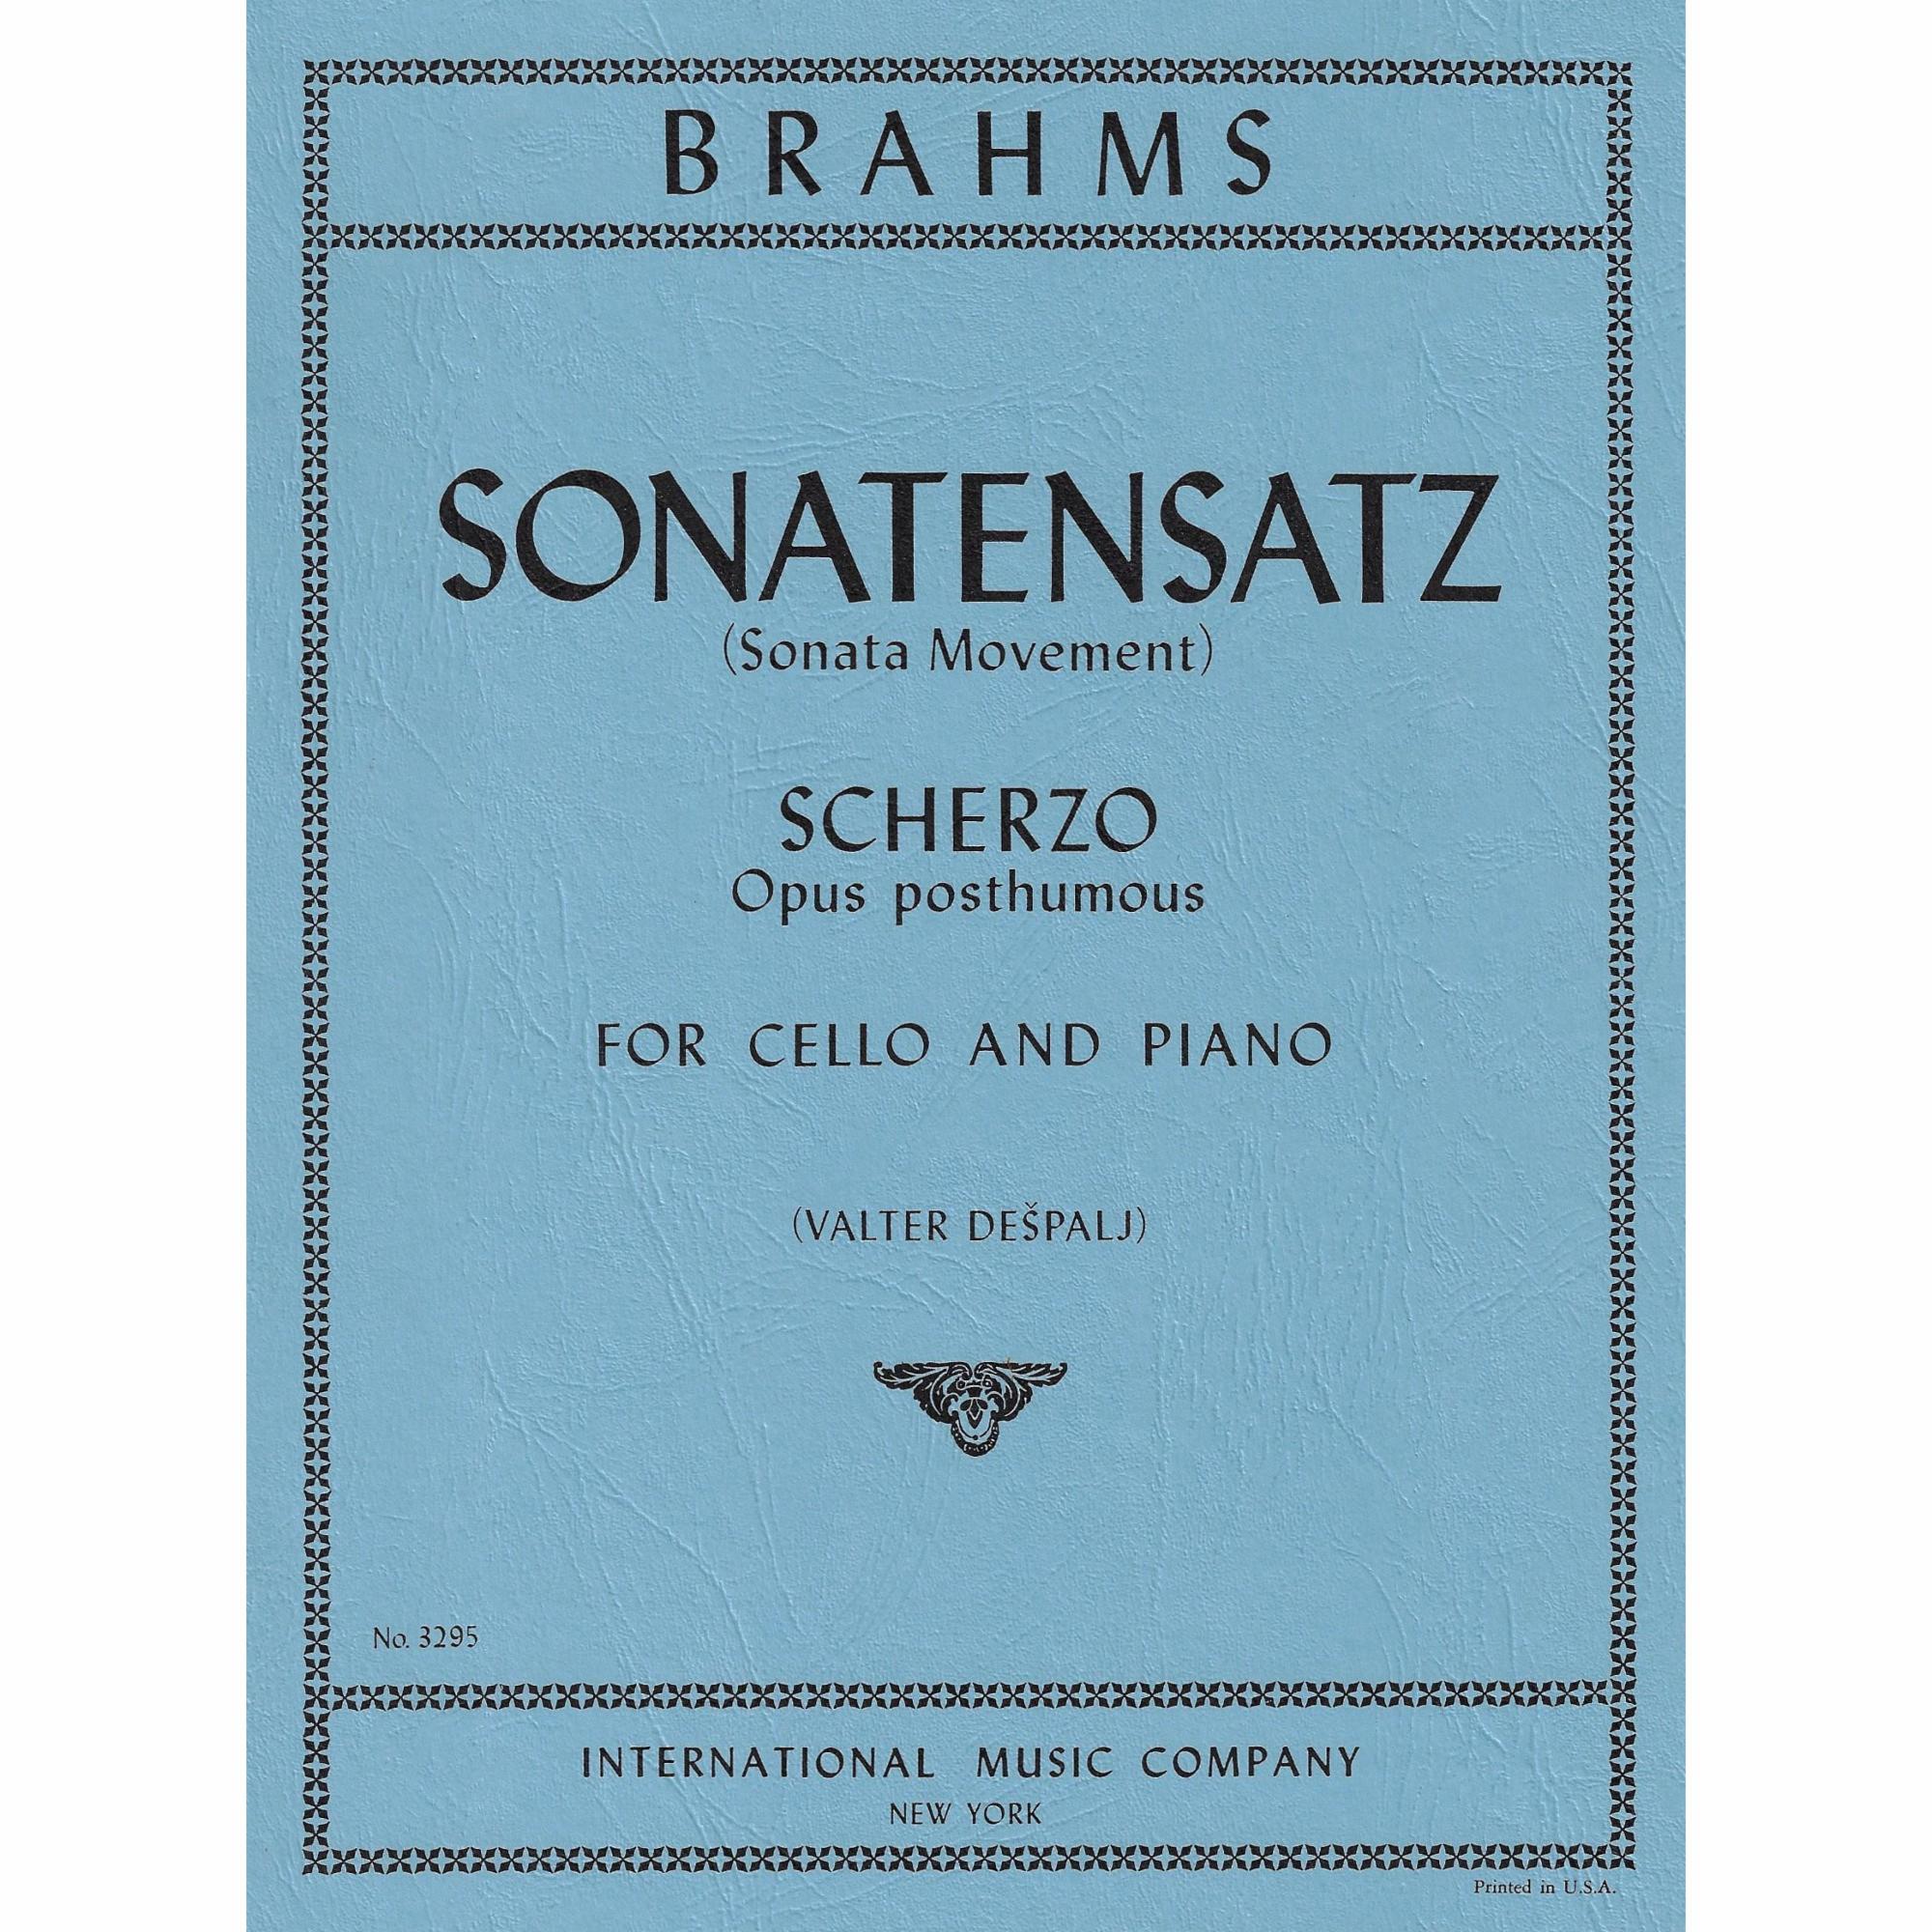 Sonatensatz (Scherzo) Op. post. for Cello and Piano